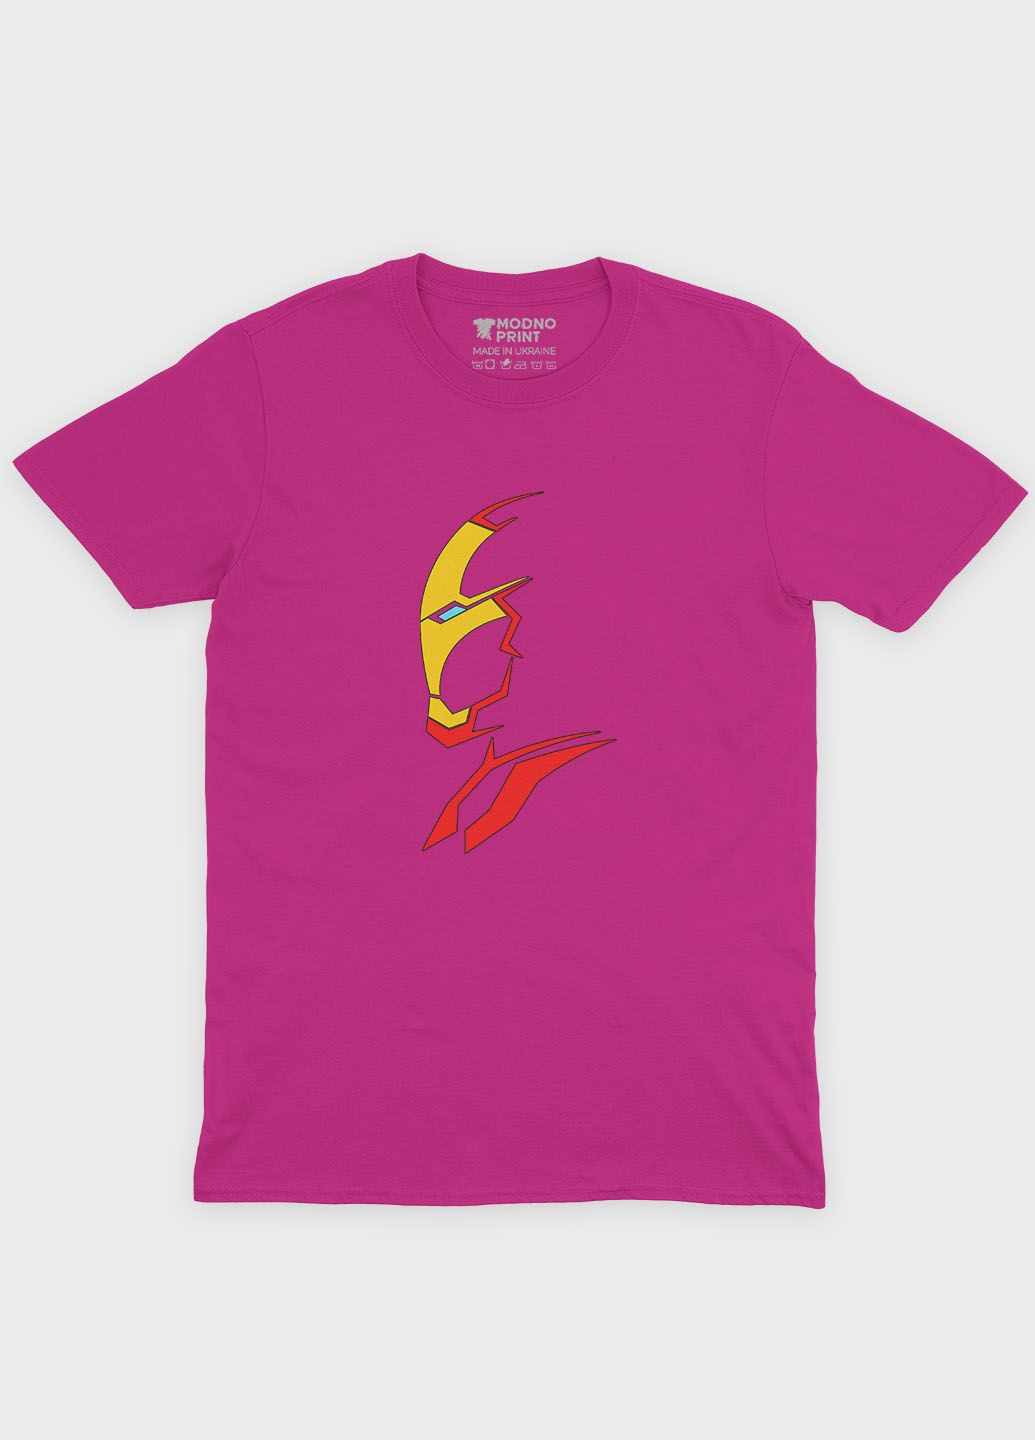 Розовая демисезонная футболка для мальчика с принтом супергероя - железный человек (ts001-1-fuxj-006-016-020-b) Modno